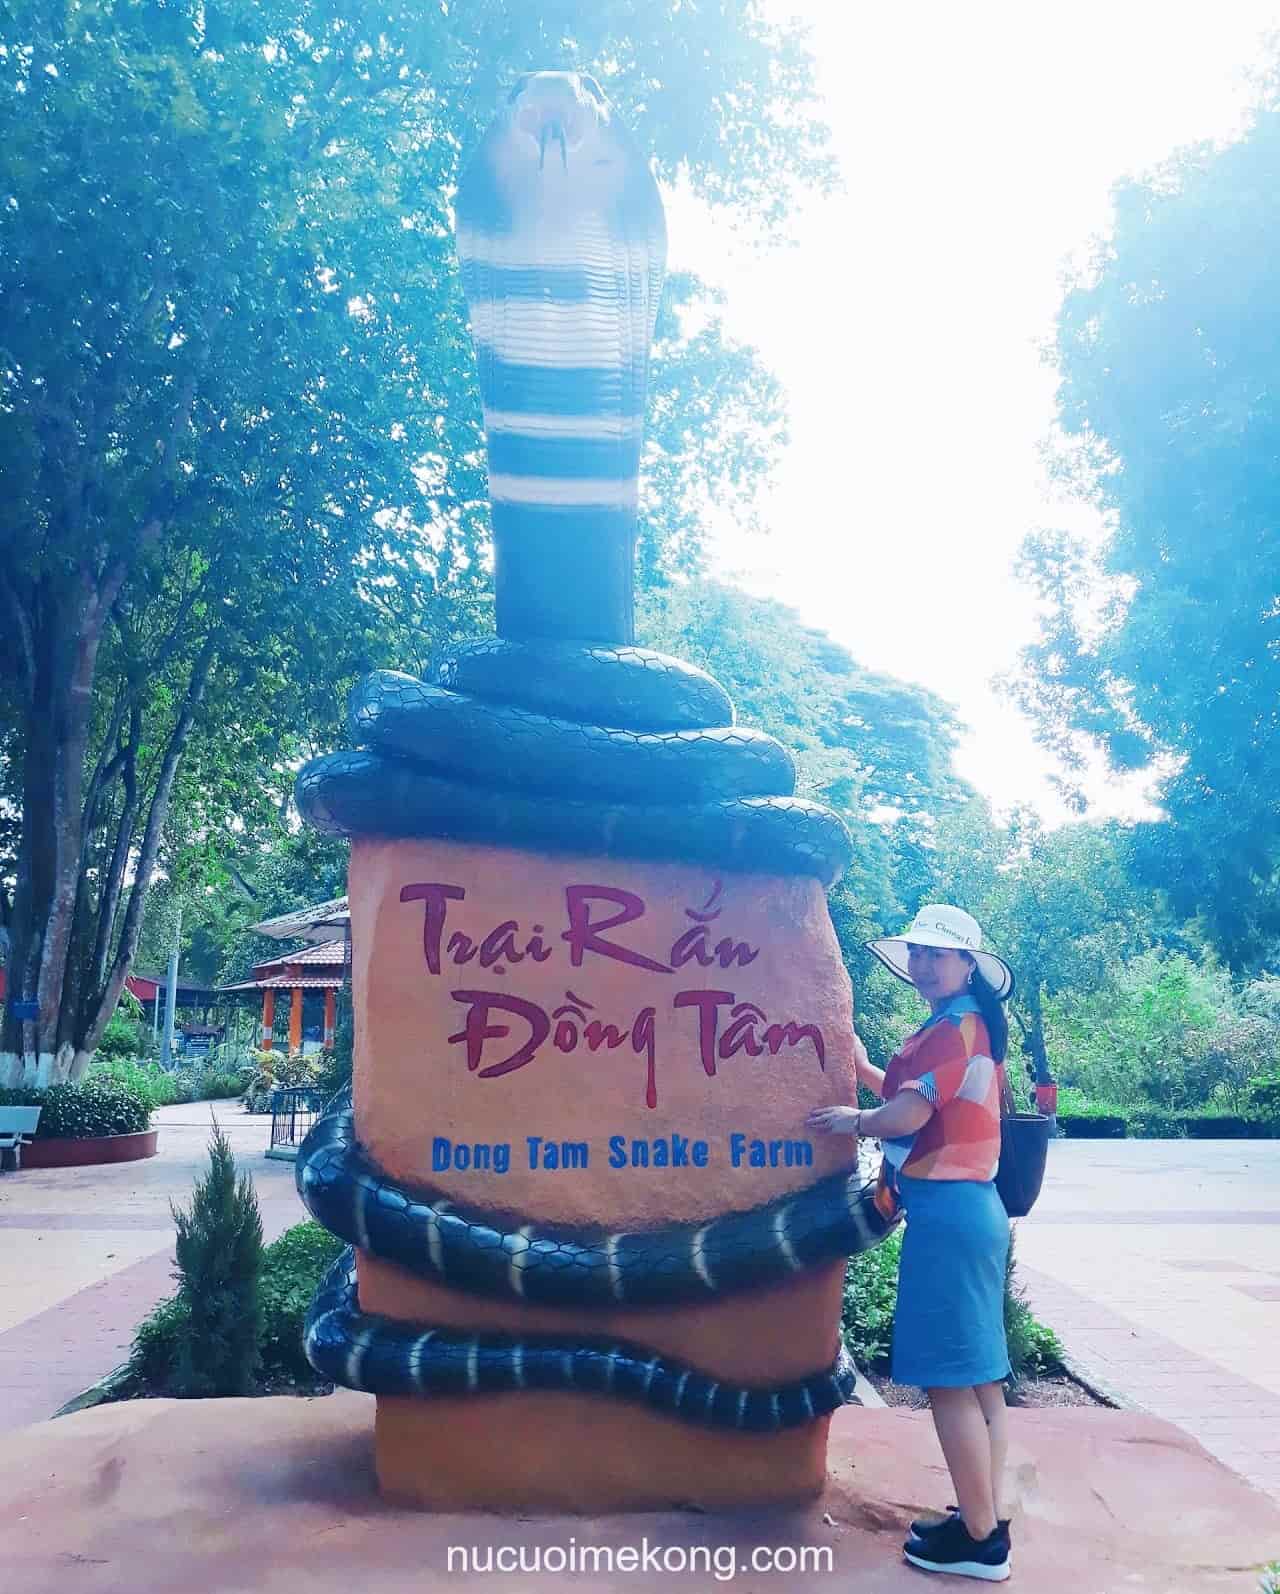 Trại rắn Đồng Tâm ở Tiền Giang - tour du lịch miền Tây 4 ngày 3 đêm giá rẻ